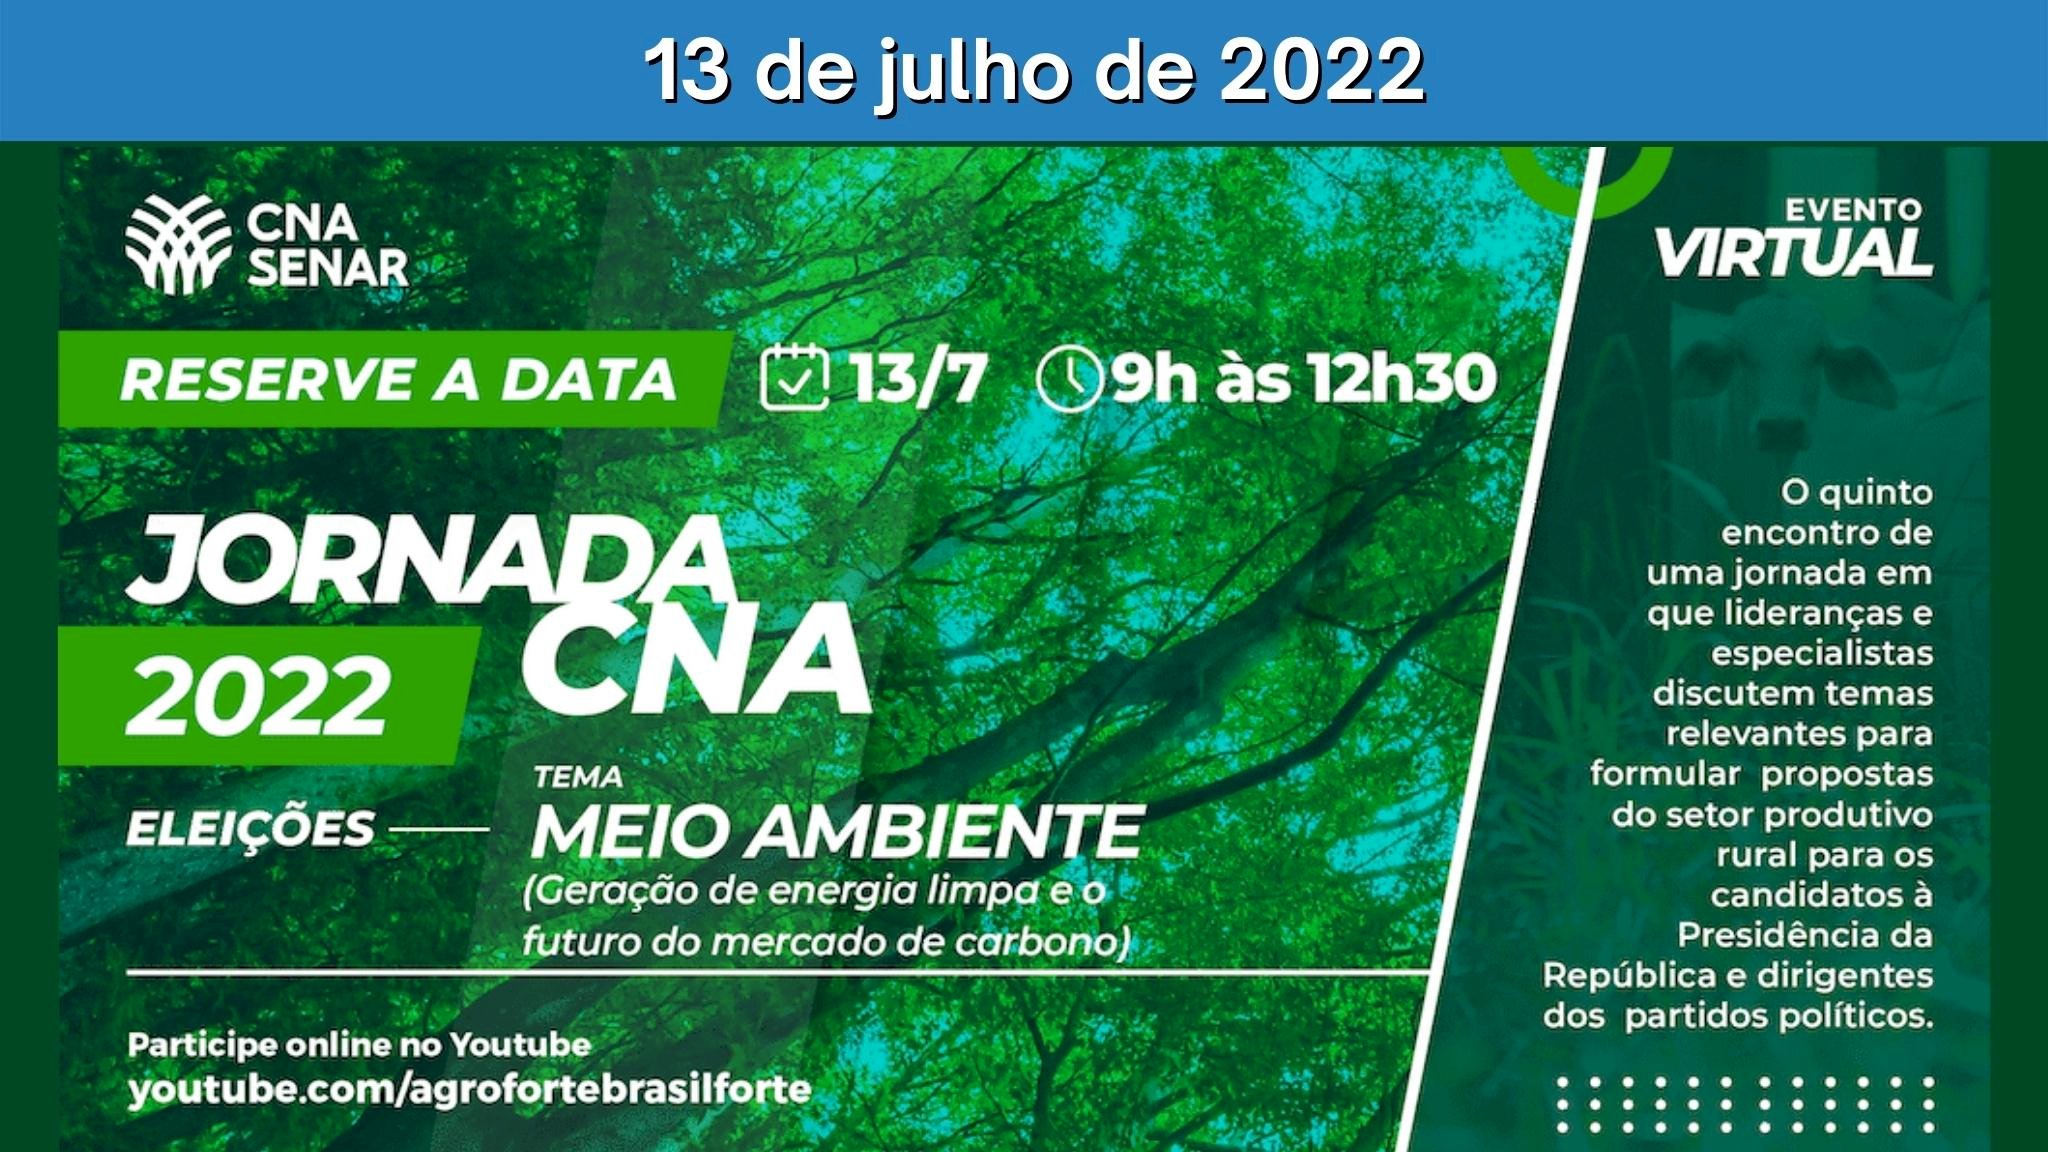 Energia limpa e mercado de carbono serão os temas da 5ª edição da Jornada CNA – Eleições 2022